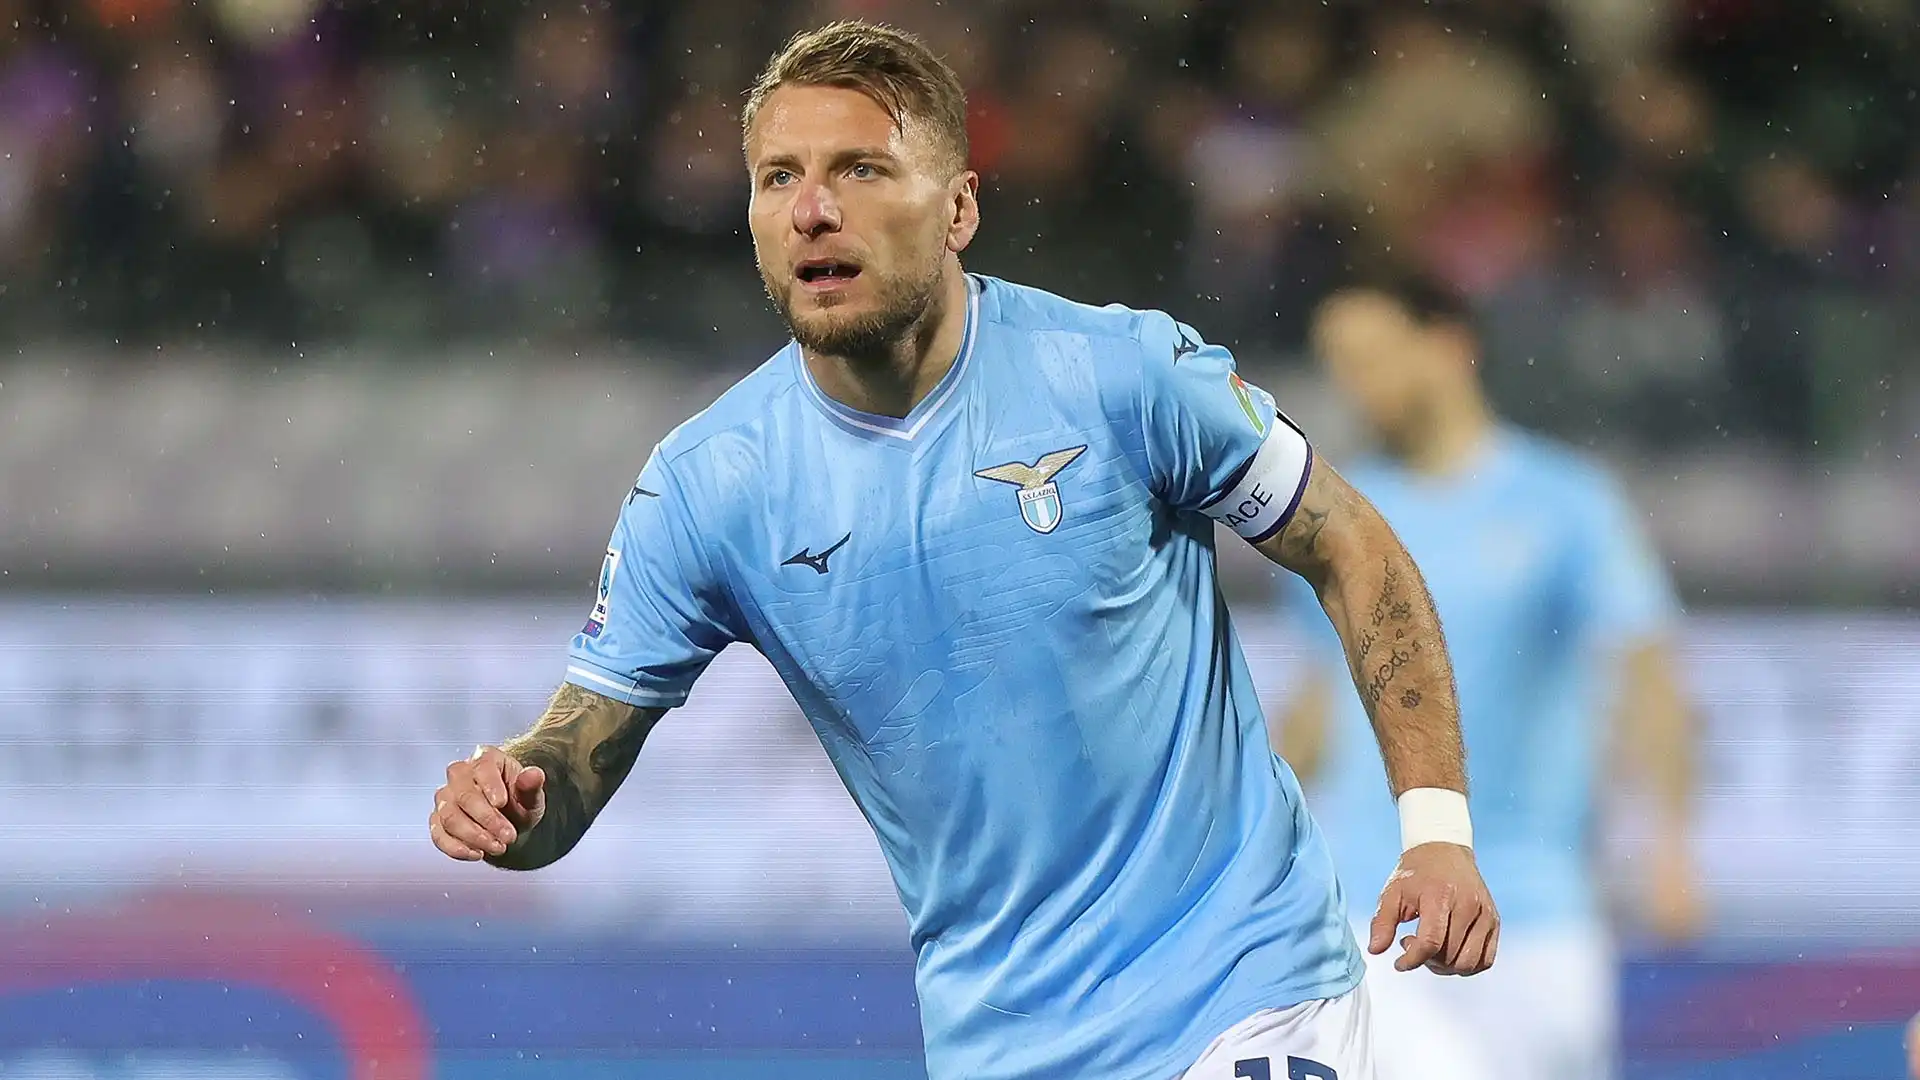 Sembra sempre più probabile l'addio del calciatore alla Lazio